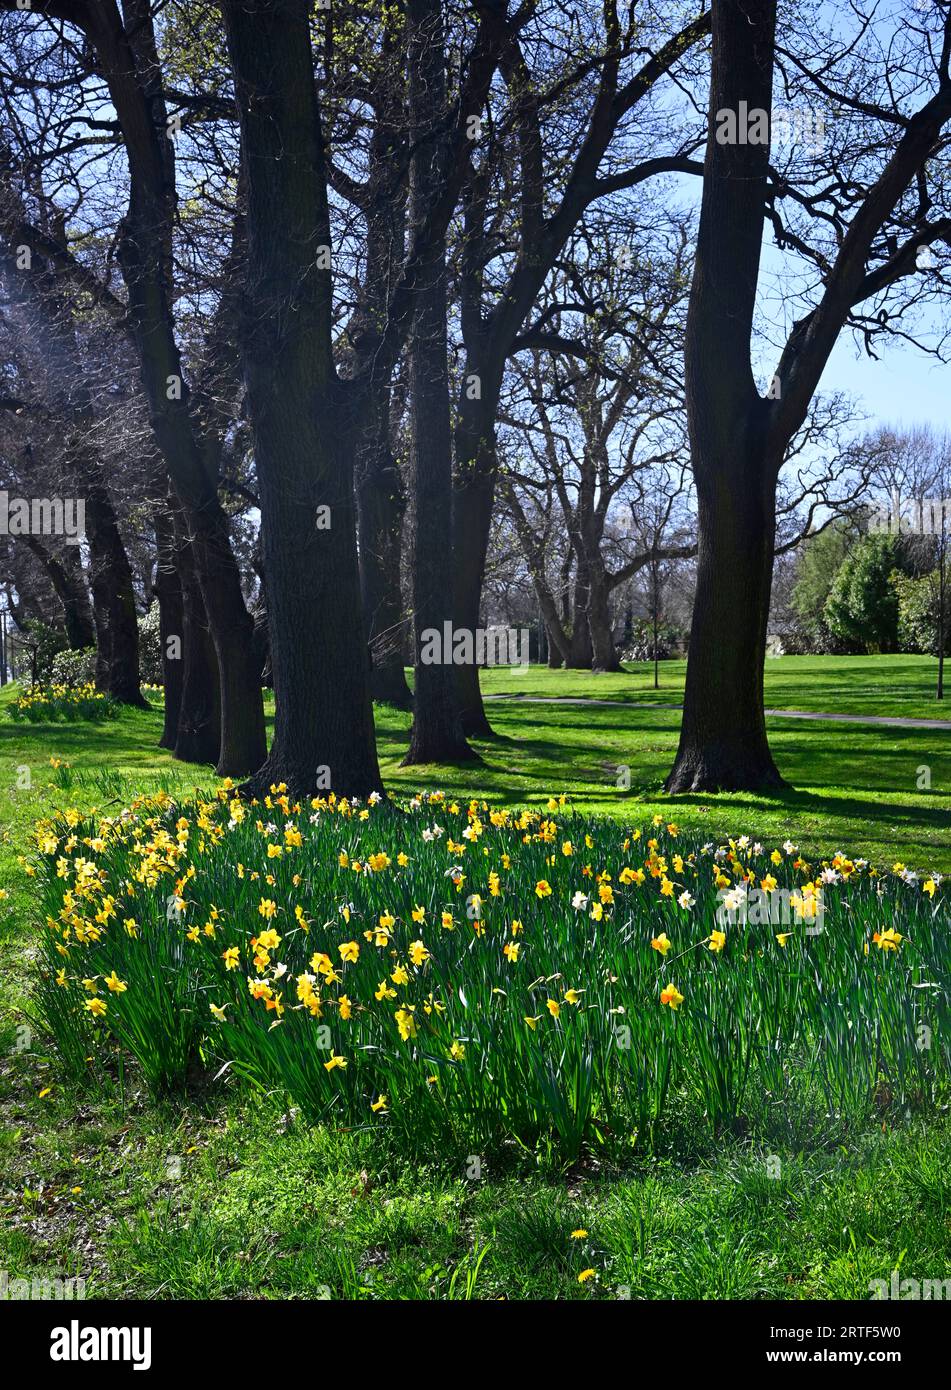 Frühling in Christchurch, Neuseeland. Narzissen in voller Blüte im Flay Park. Eichen im Hintergrund. Stockfoto